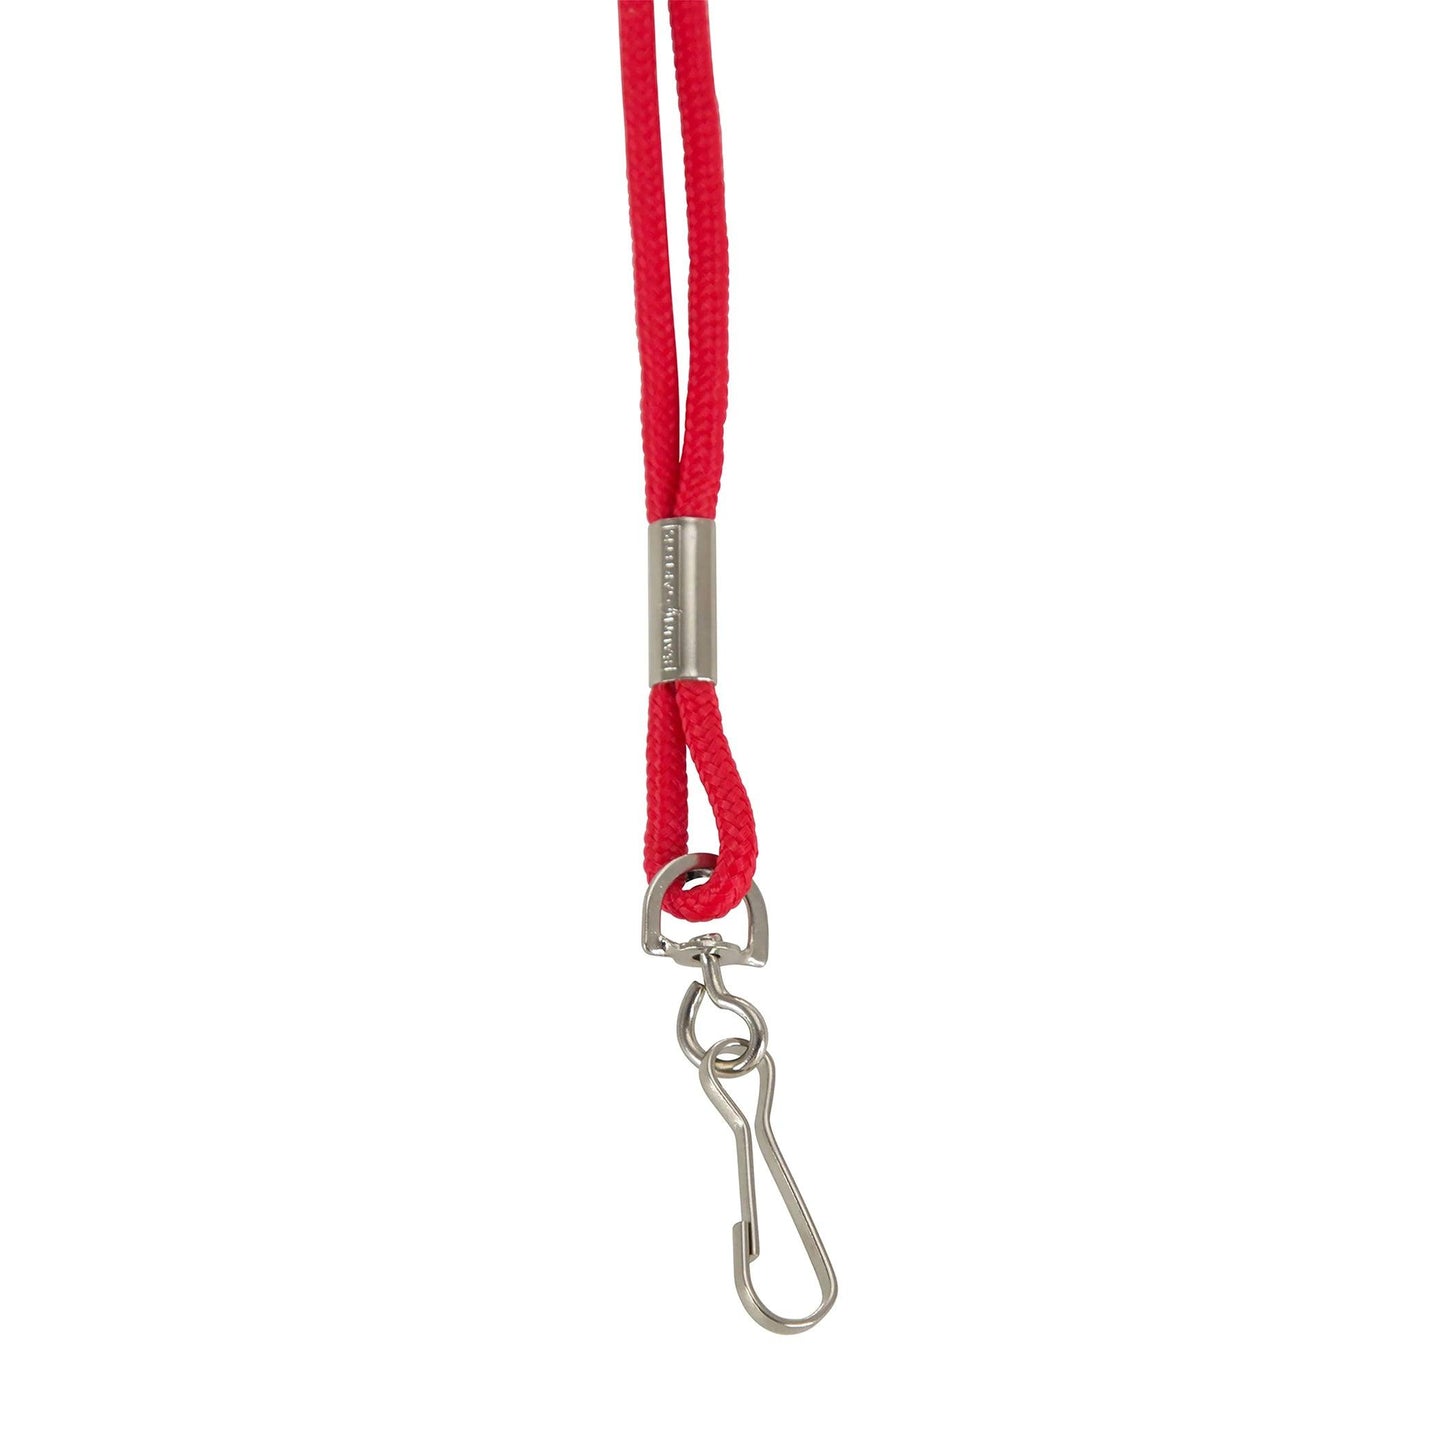 Standard Lanyard Hook Rope Style, Red, Pack of 24 - Loomini